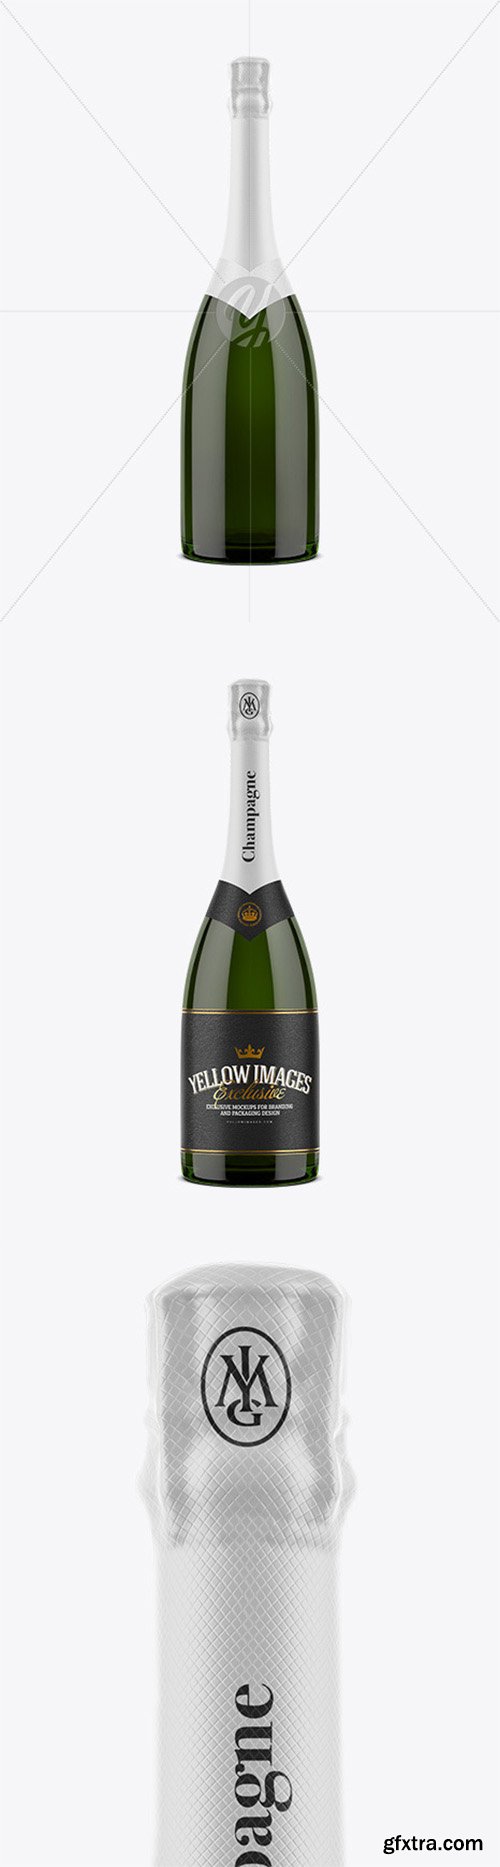 Champagne Bottle Mockup 52756